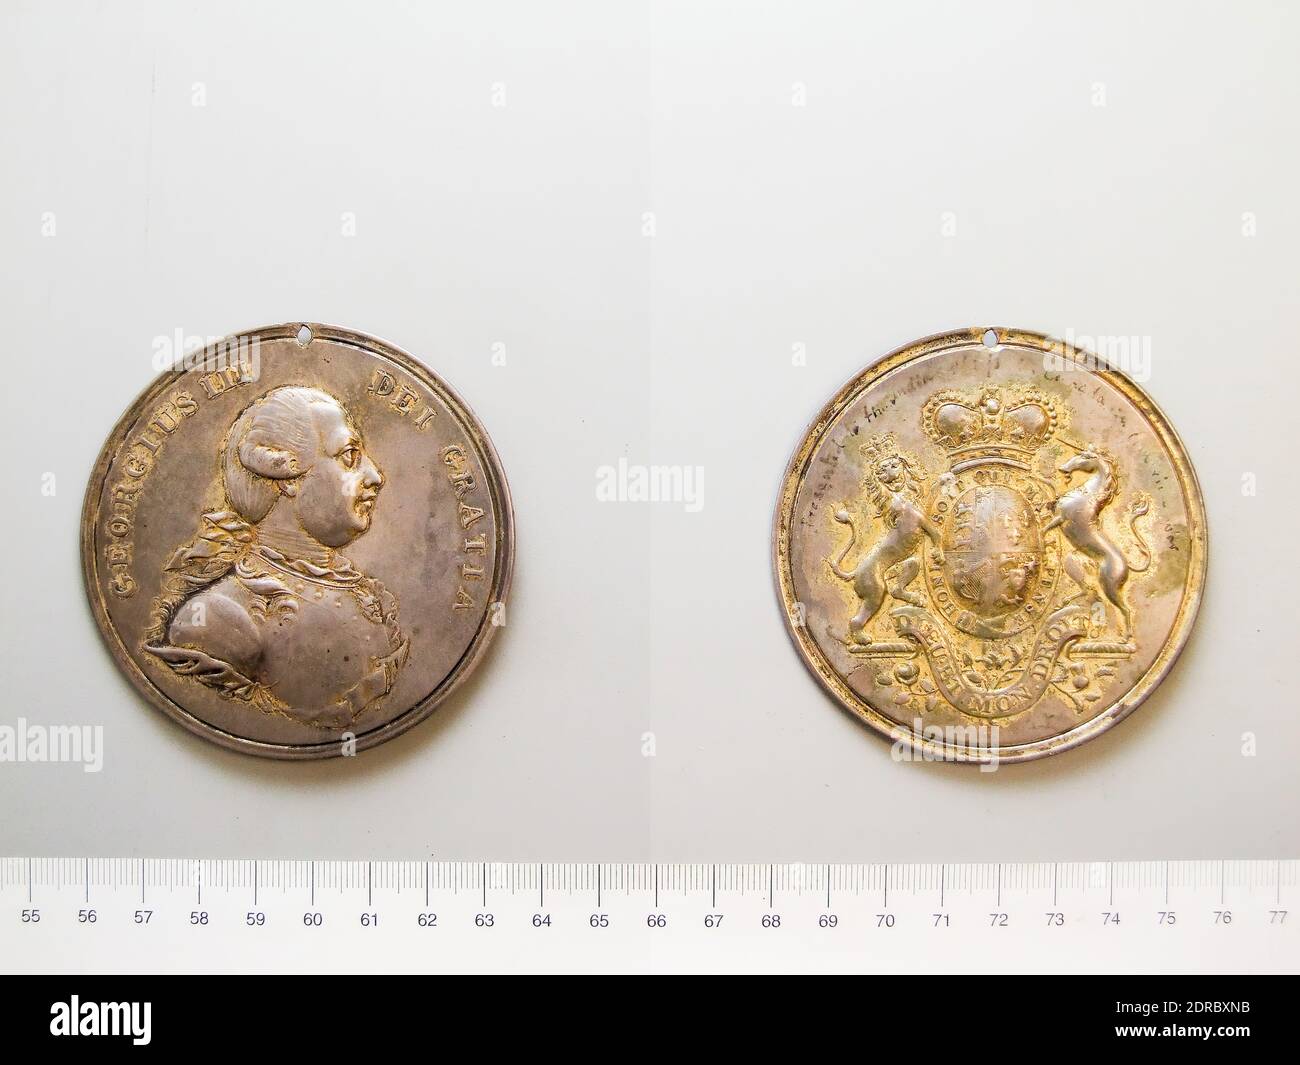 Herrscher: George III., König von Großbritannien, Brite, 1738–1820, Reg. 1760–1820, Medaille von George III, Silber, 100.67 g, 12:00, 76 mm, Made in England, Britisch, 18.–19. Jahrhundert, Numismatik Stockfoto